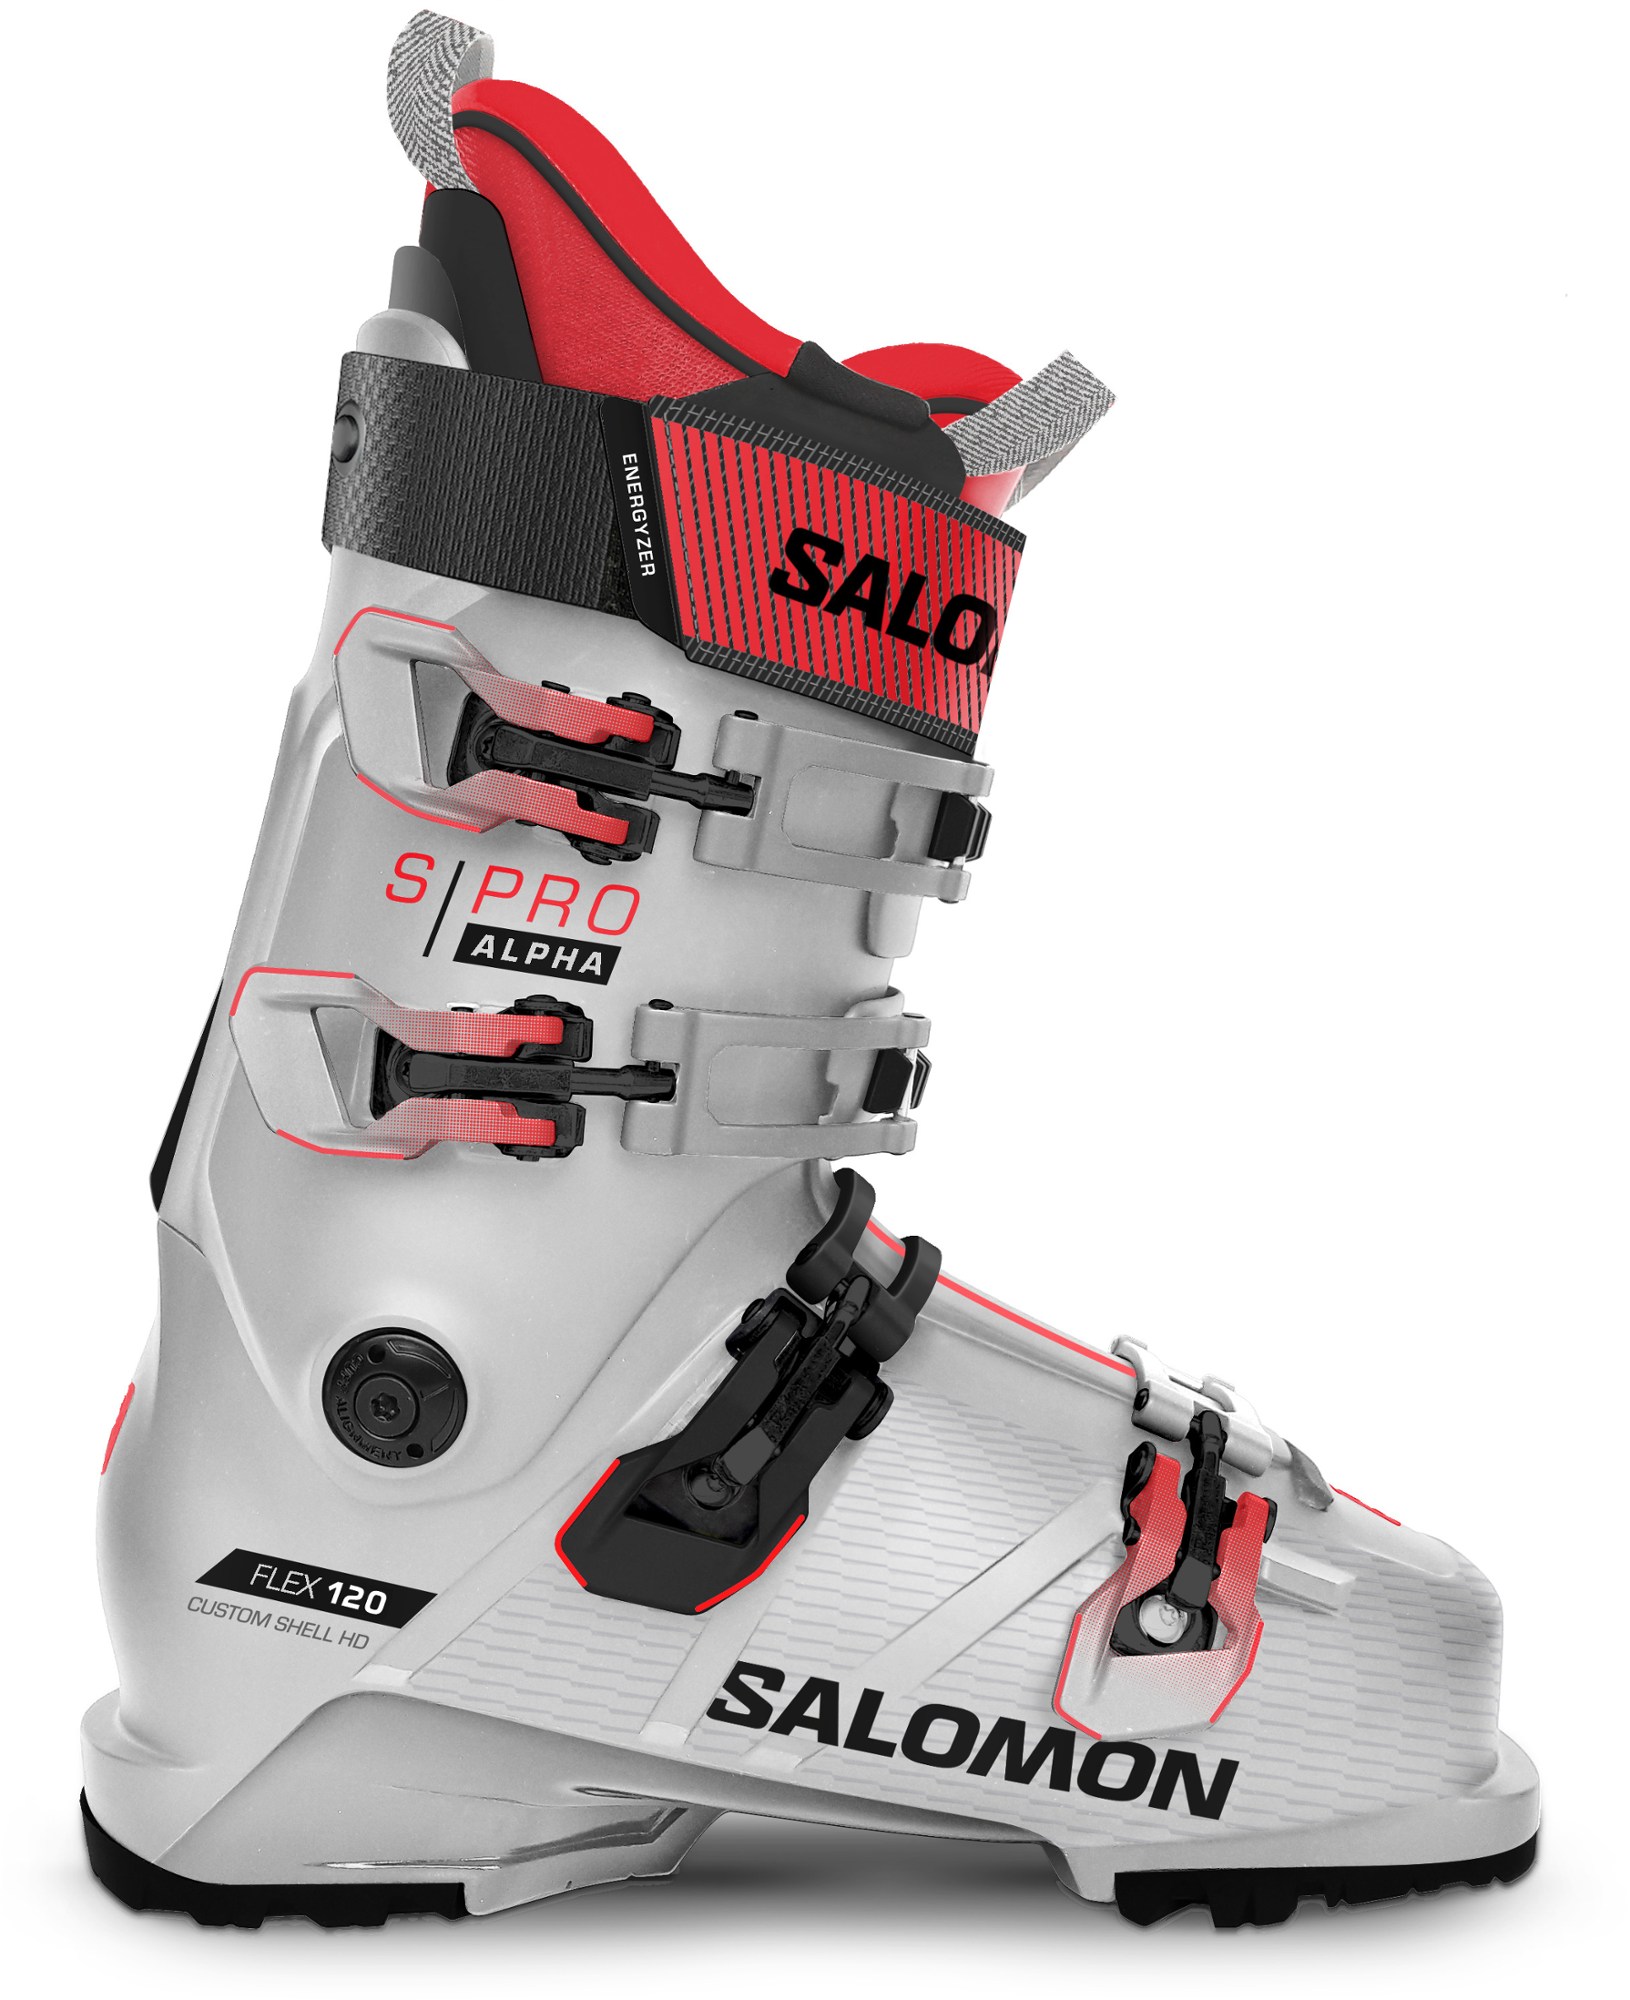 Лыжные ботинки S/PRO ALPHA 120 GW - Мужские - 2023/2024 г. Salomon, синий лыжные ботинки s pro supra boa 120 gw 2024 г salomon цвет grey aurora black red